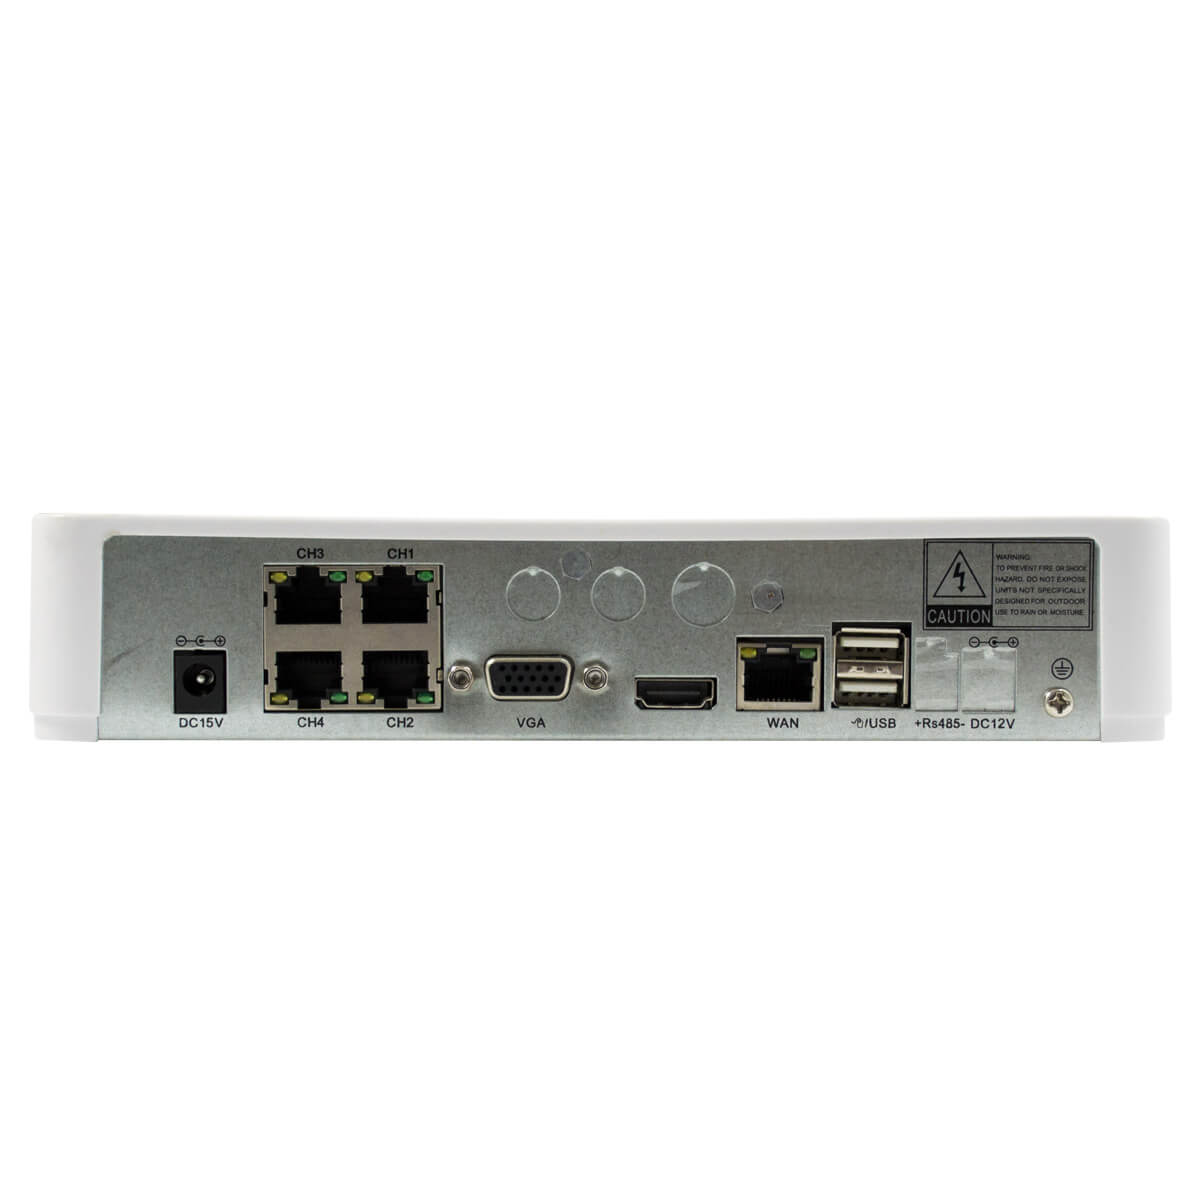 Combo de 4 camaras IP 1/3 Sensor CMOS 1.3MP, con NVR de 4 canales